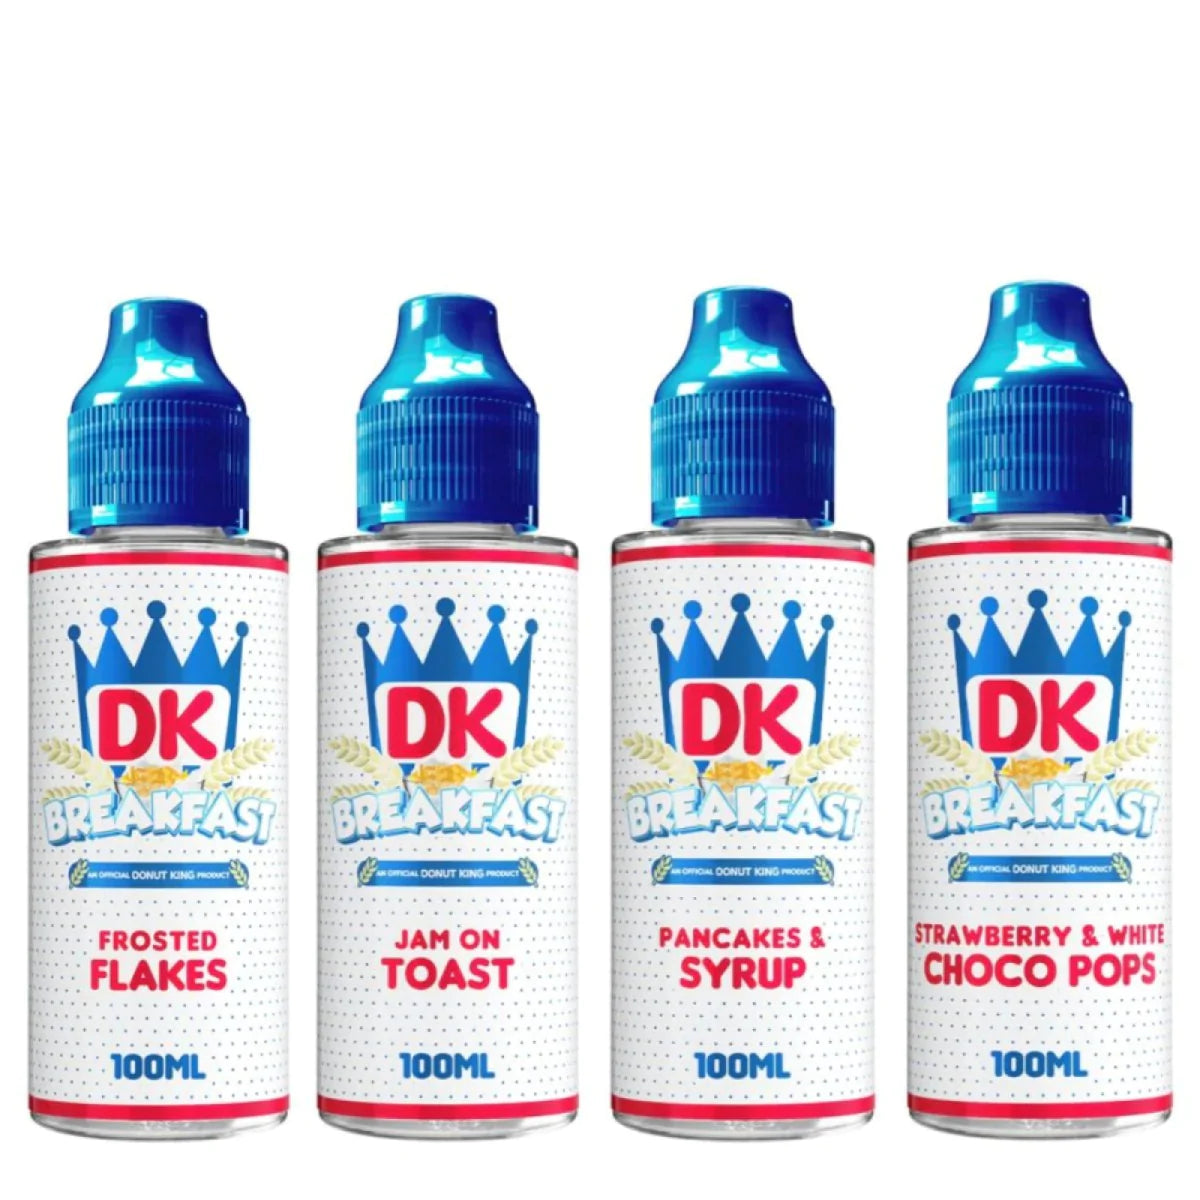 DK BREAKFAST 100ml SHORTFILL E-LIQUIDS BY DONUT KING